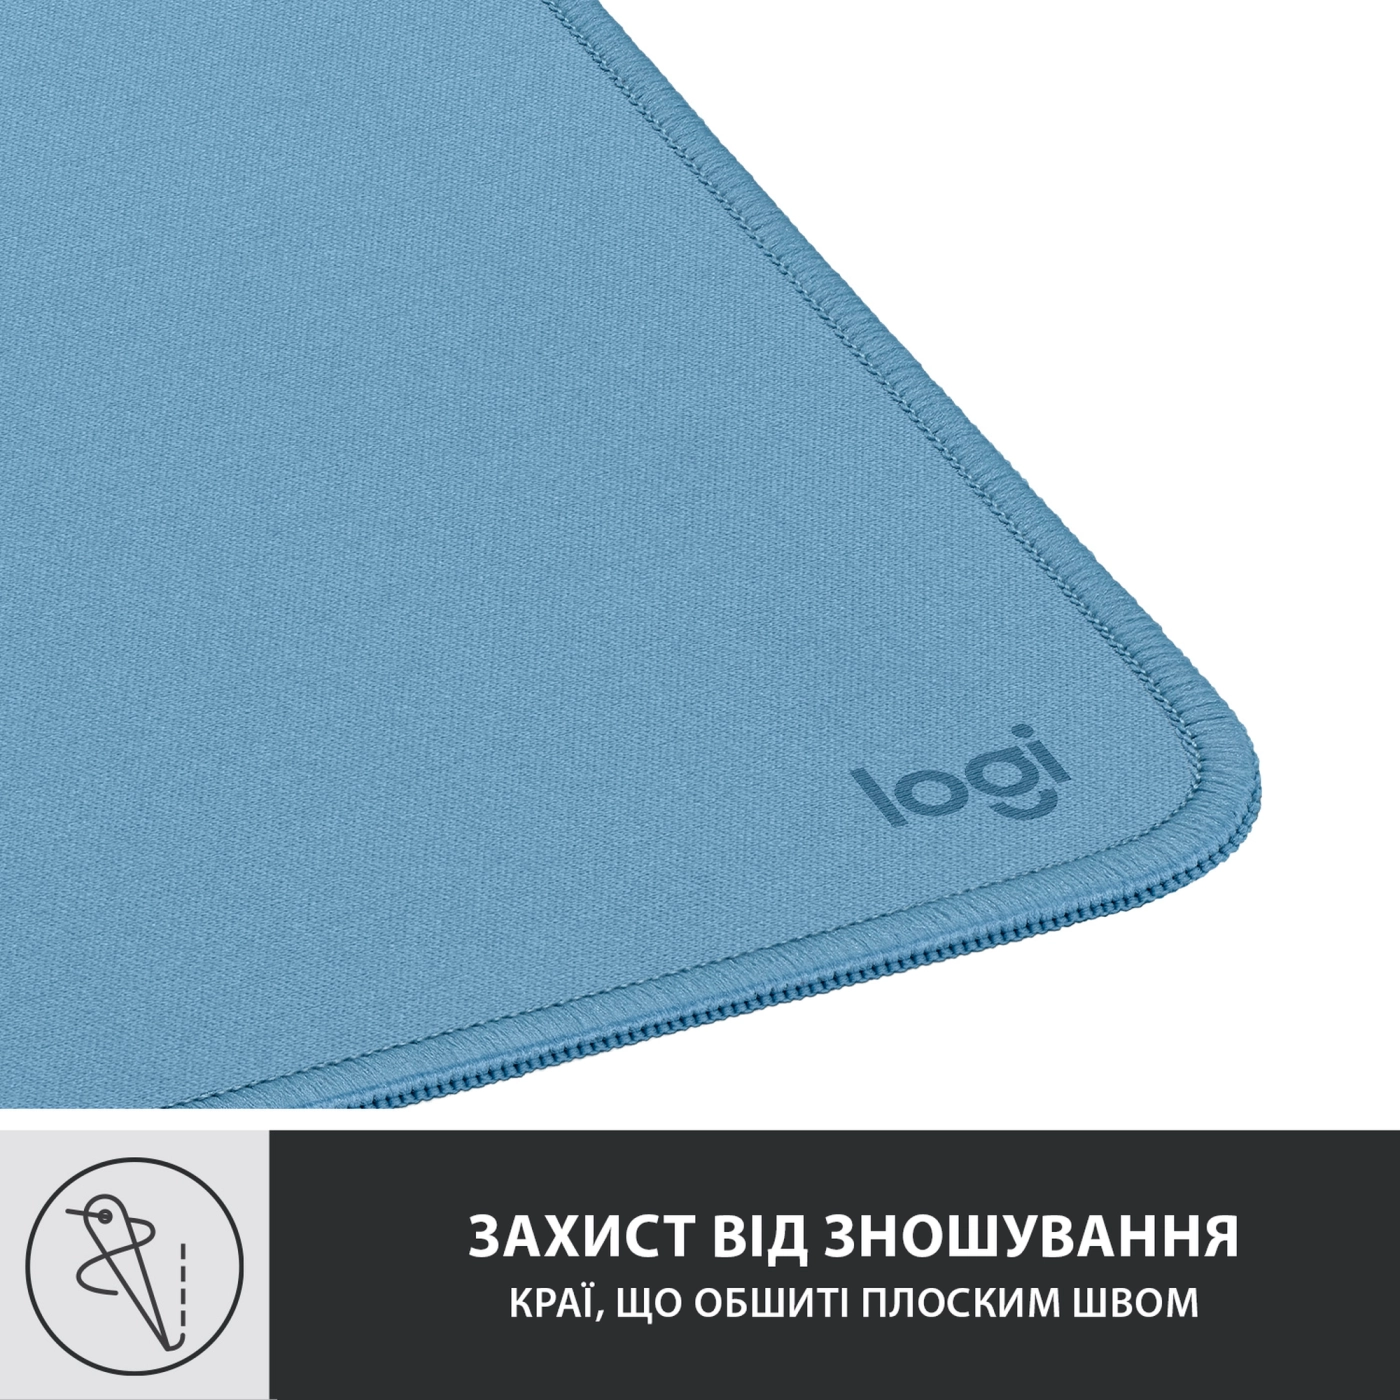 Купить Коврик для мыши Logitech Mouse Pad Studio Series BLUE GREY (956-000051) - фото 5